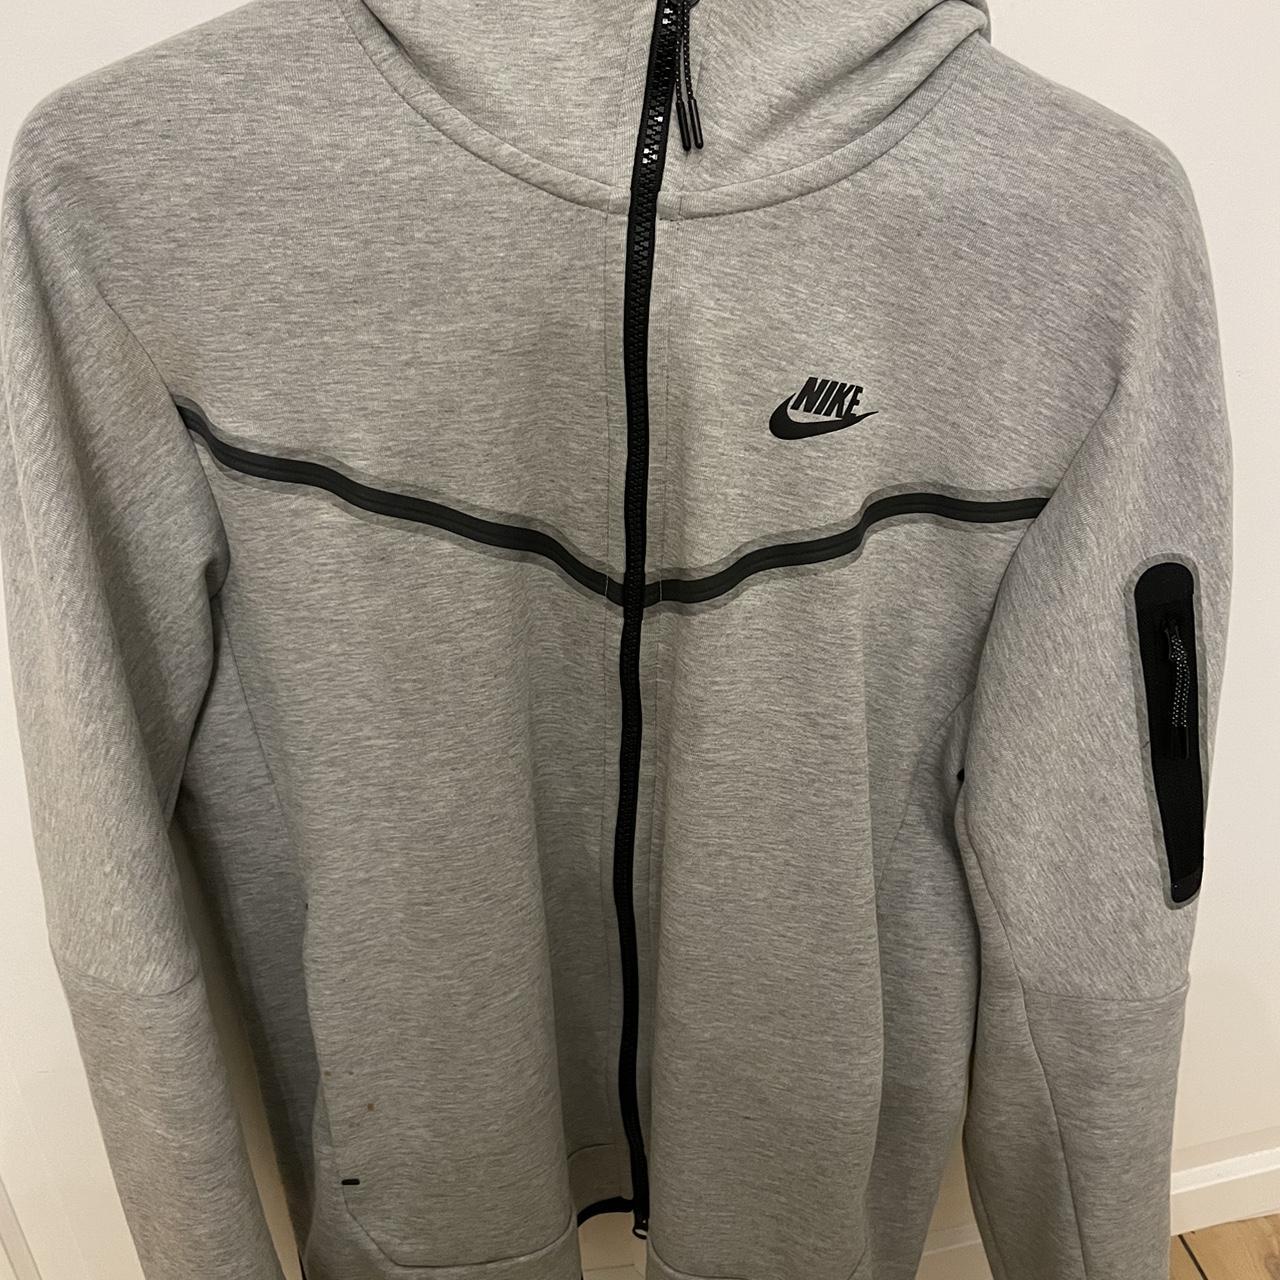 Nike tech fleece hoodie grey Almost spotless apart... - Depop